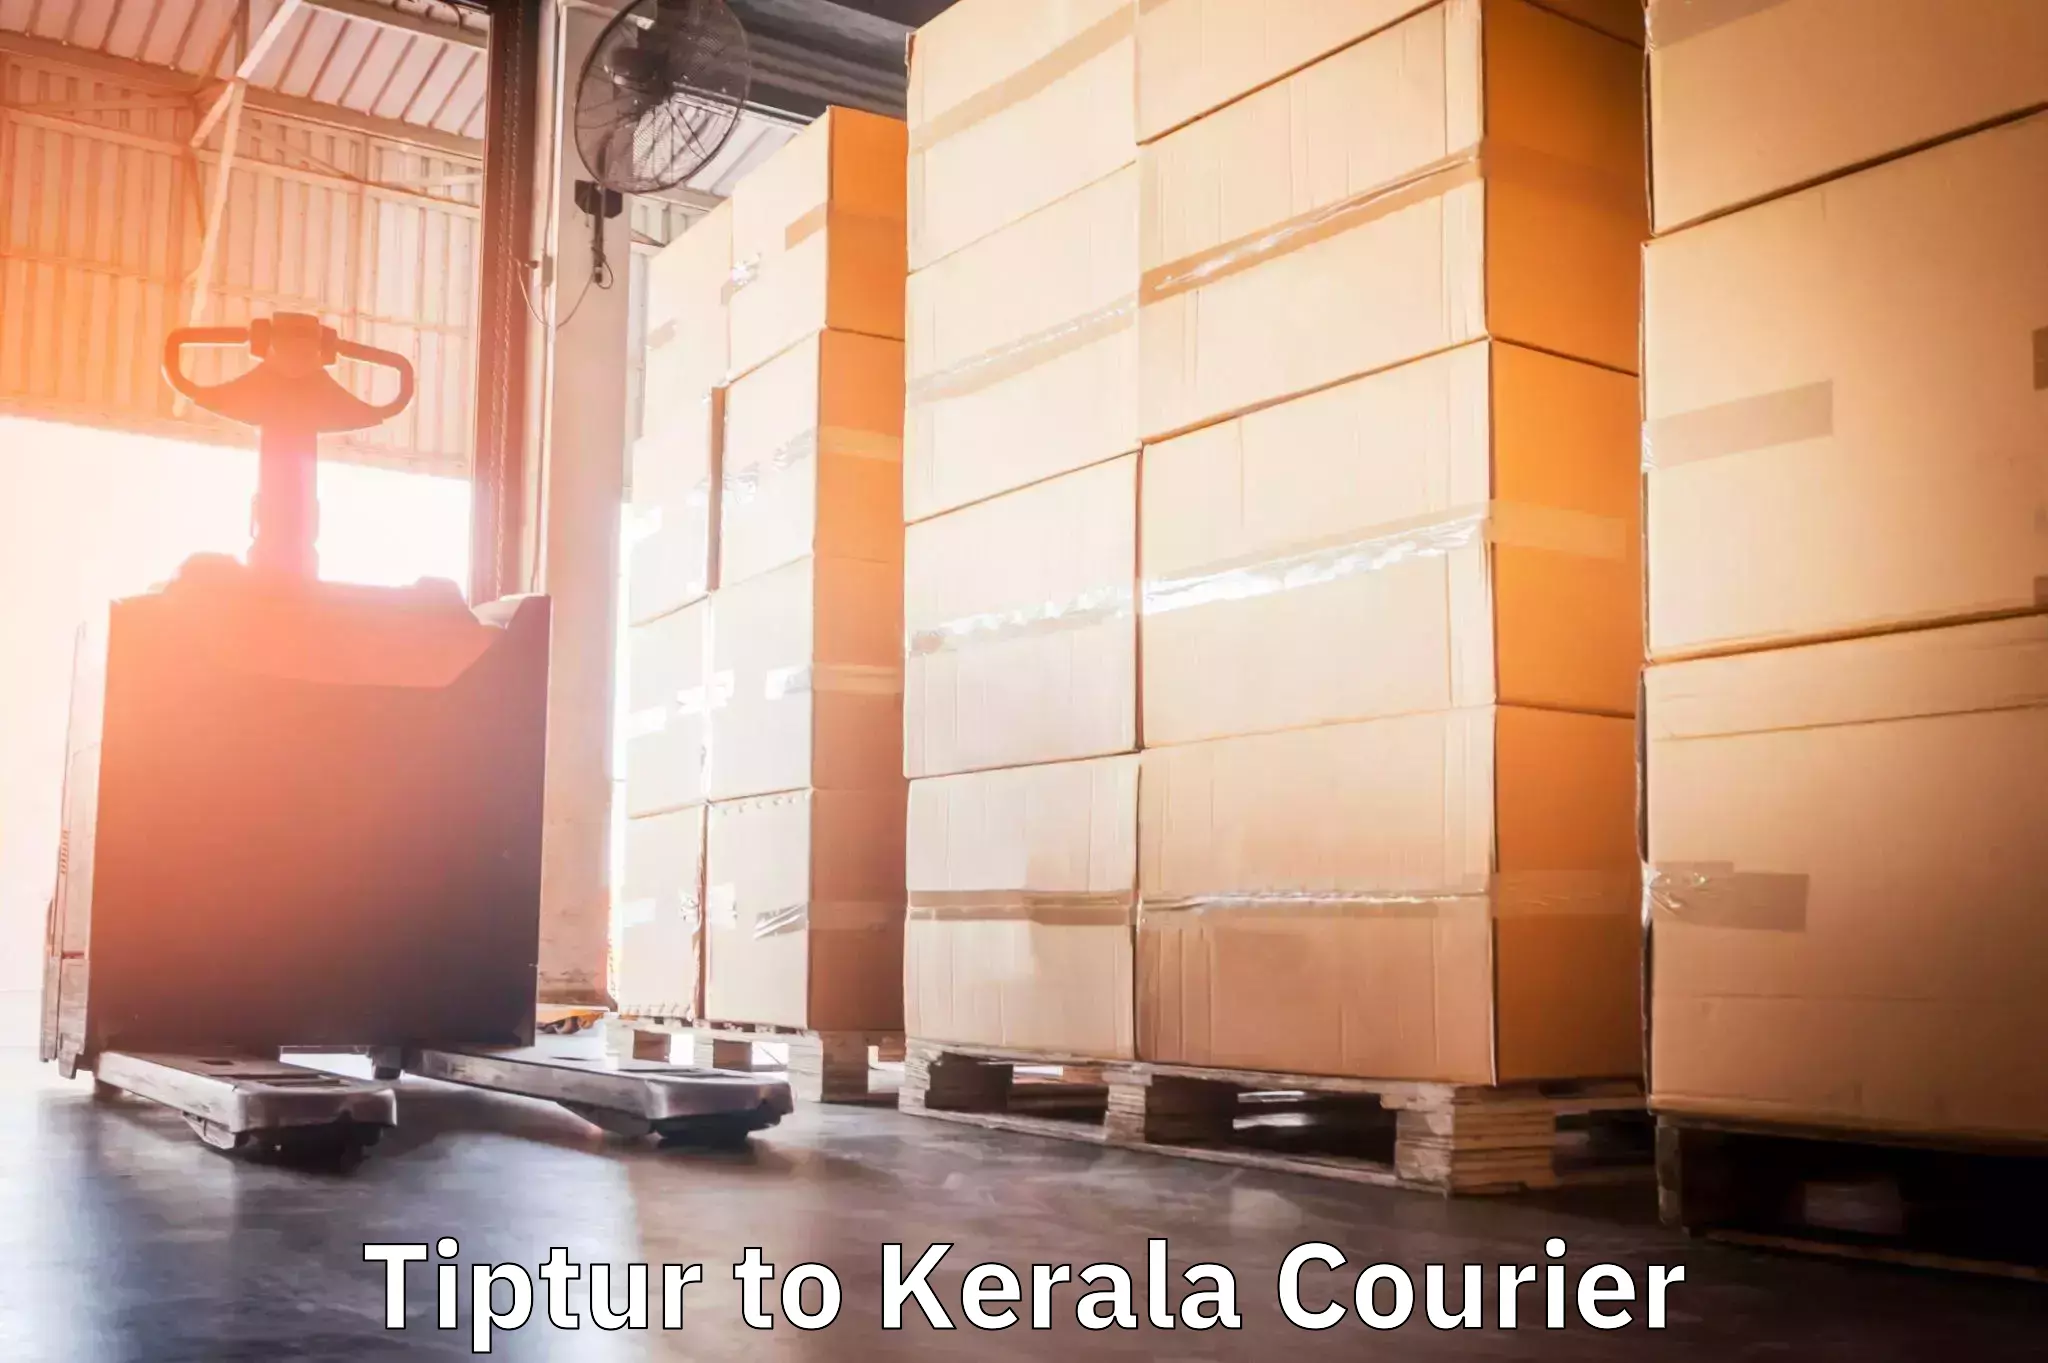 Express courier facilities Tiptur to Palakkad